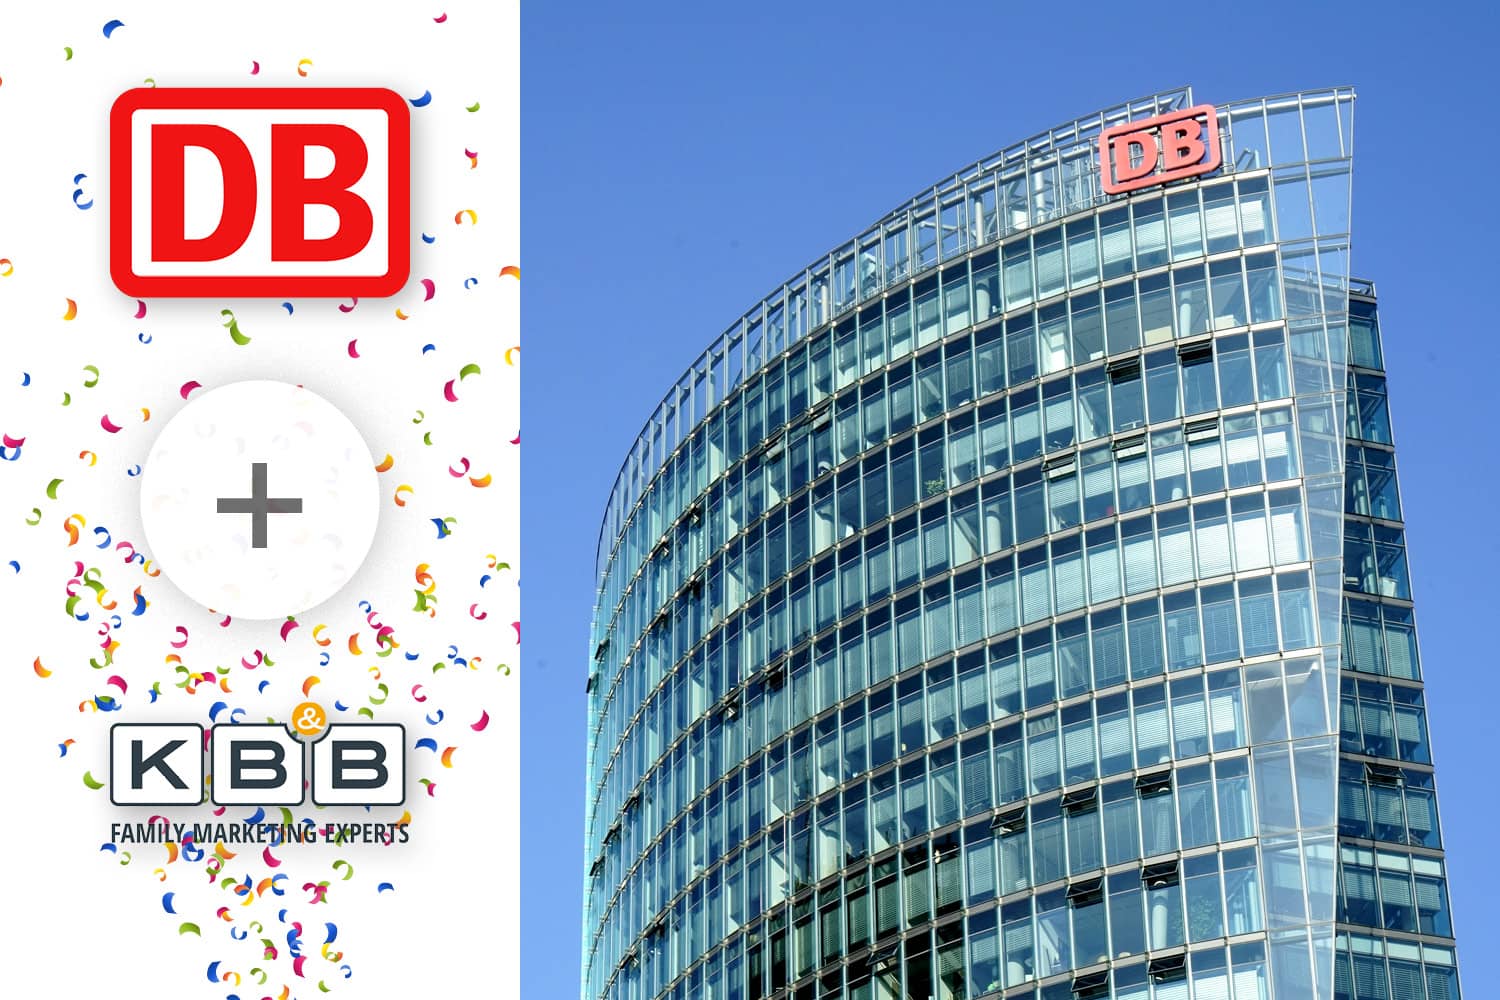 KB&B und Deutsche Bahn bauen Zusammenarbeit aus